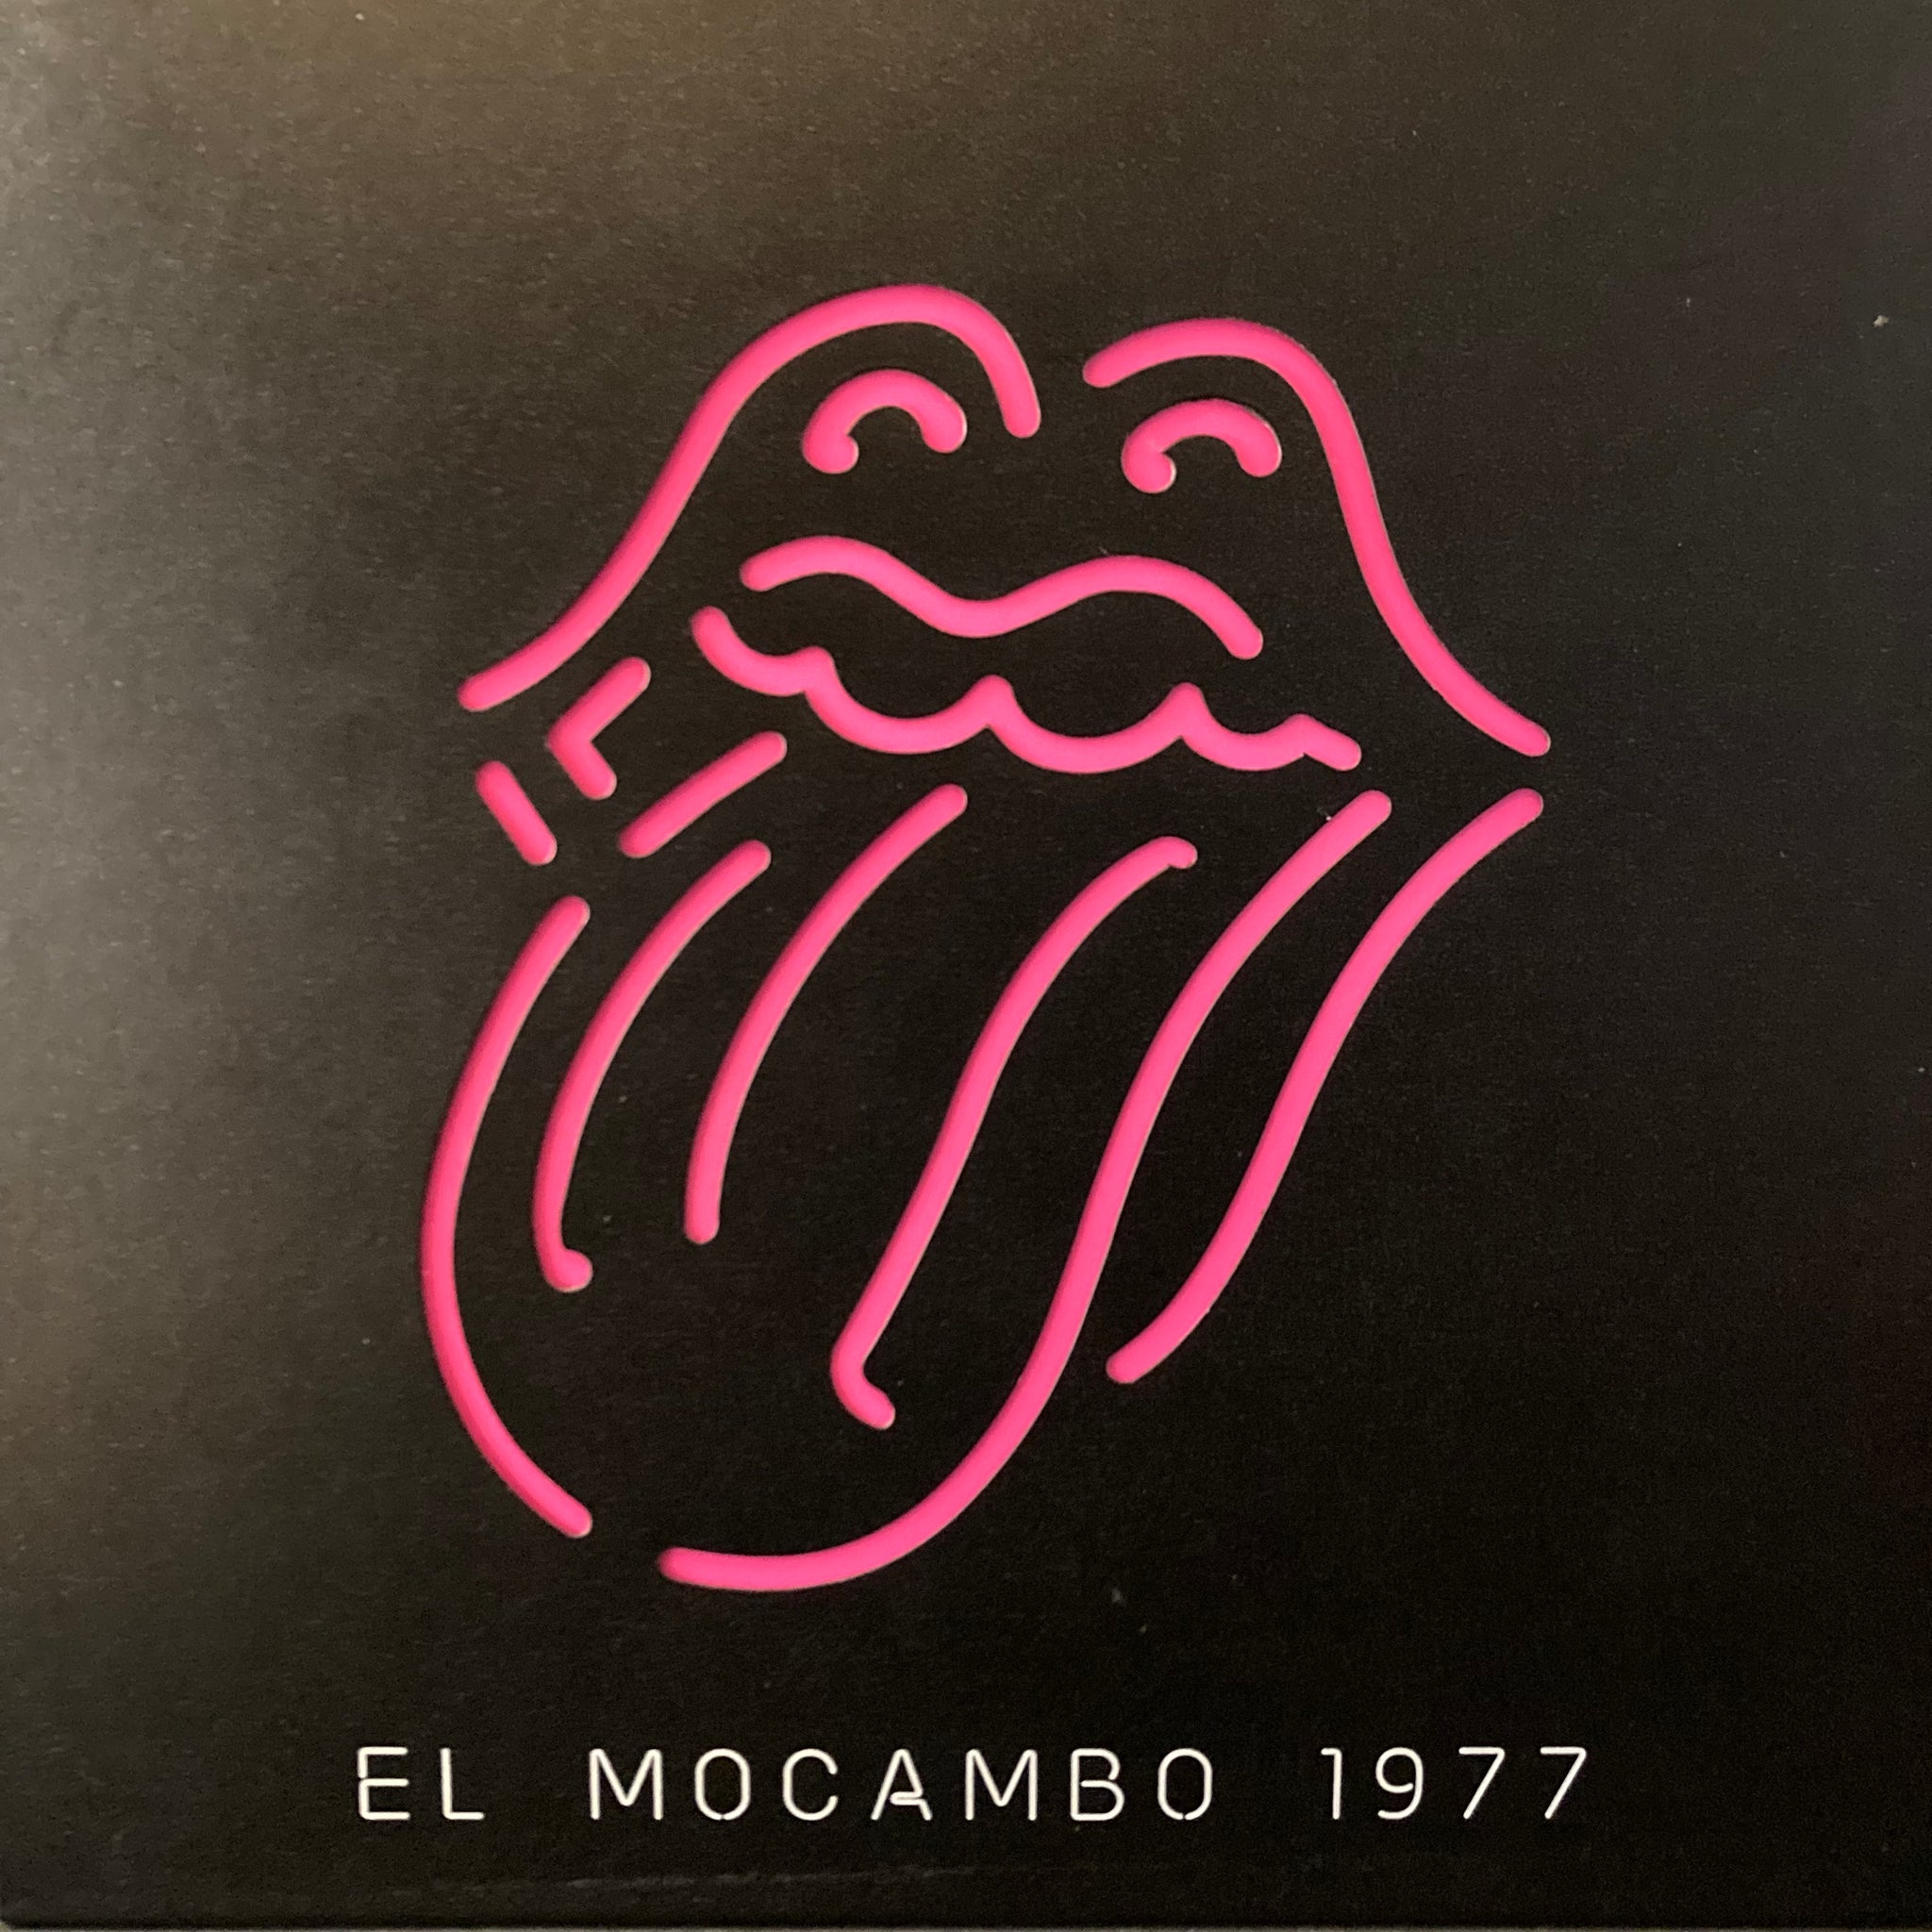 Rolling Stones - El Mocambo 1977 Box Set [Ltd. Edition Neon Vinyl 4LP]